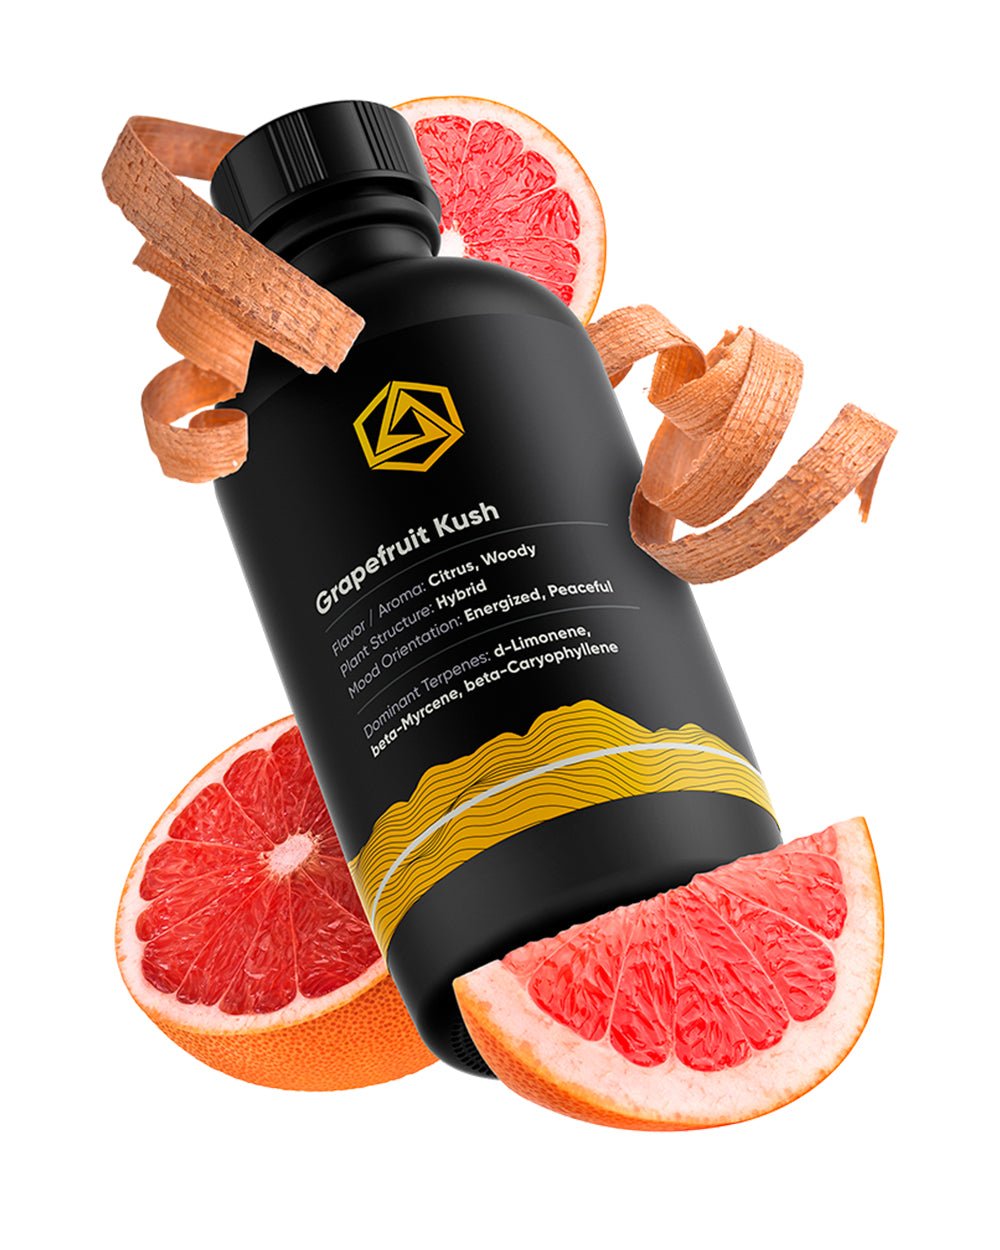 ABSTRAX TECH | Grapefruit Kush Terpene Blend - 1